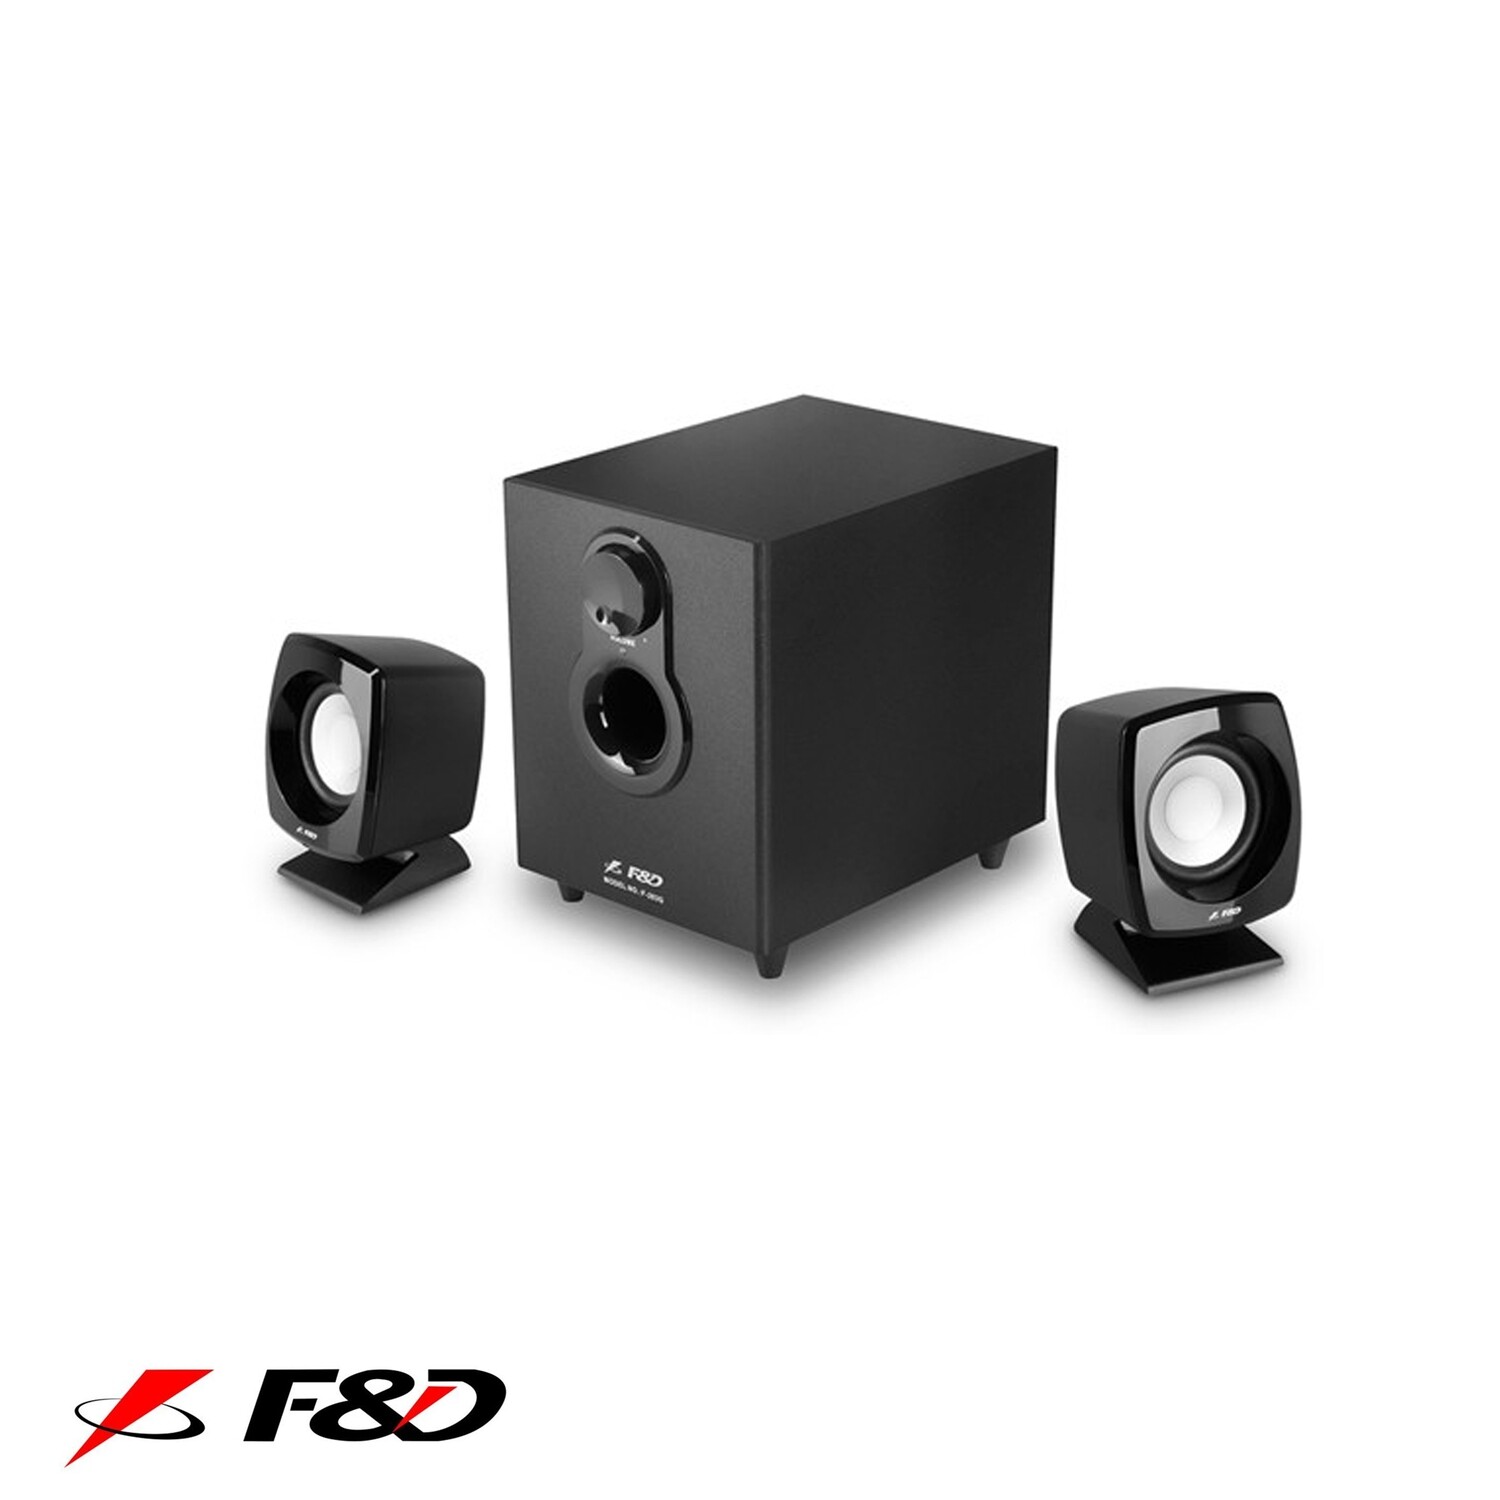 F & D F203G Wired Speaker